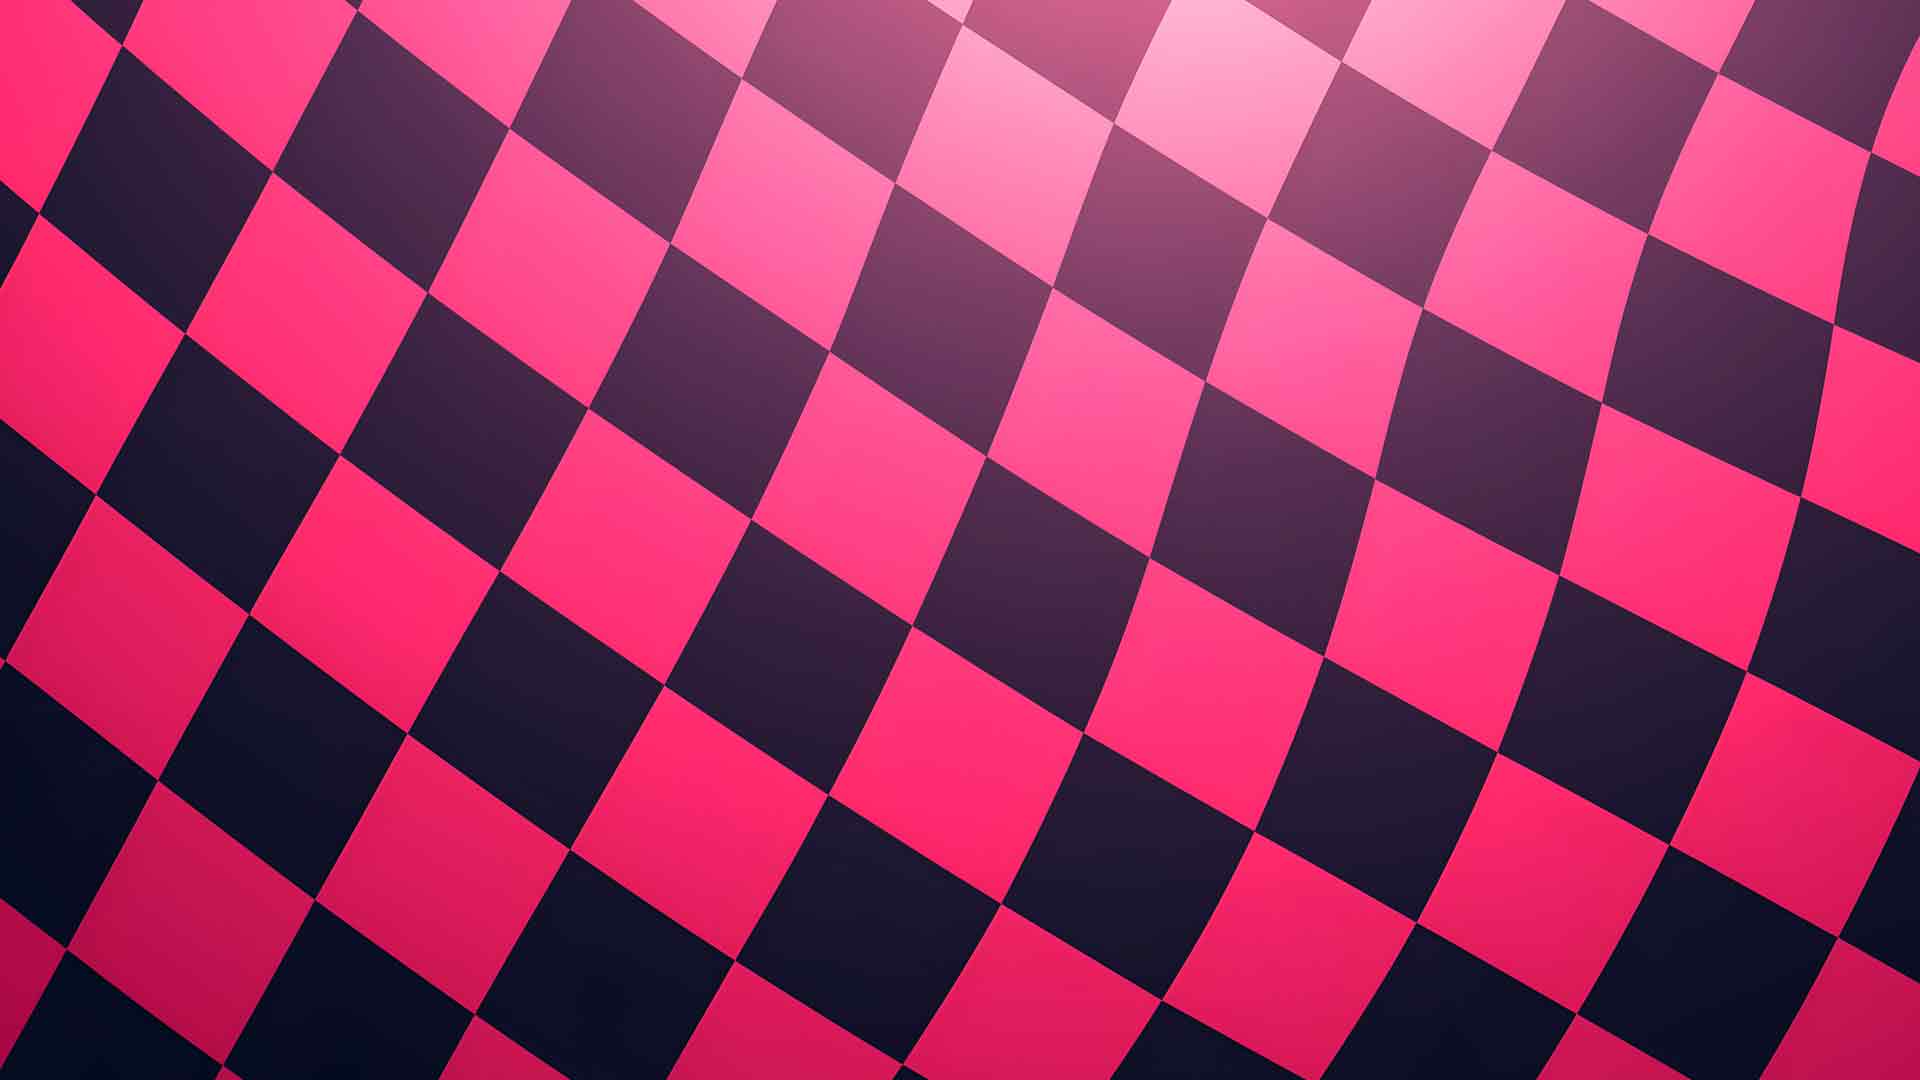 黑色和粉红色的国际象棋方块桌面壁纸